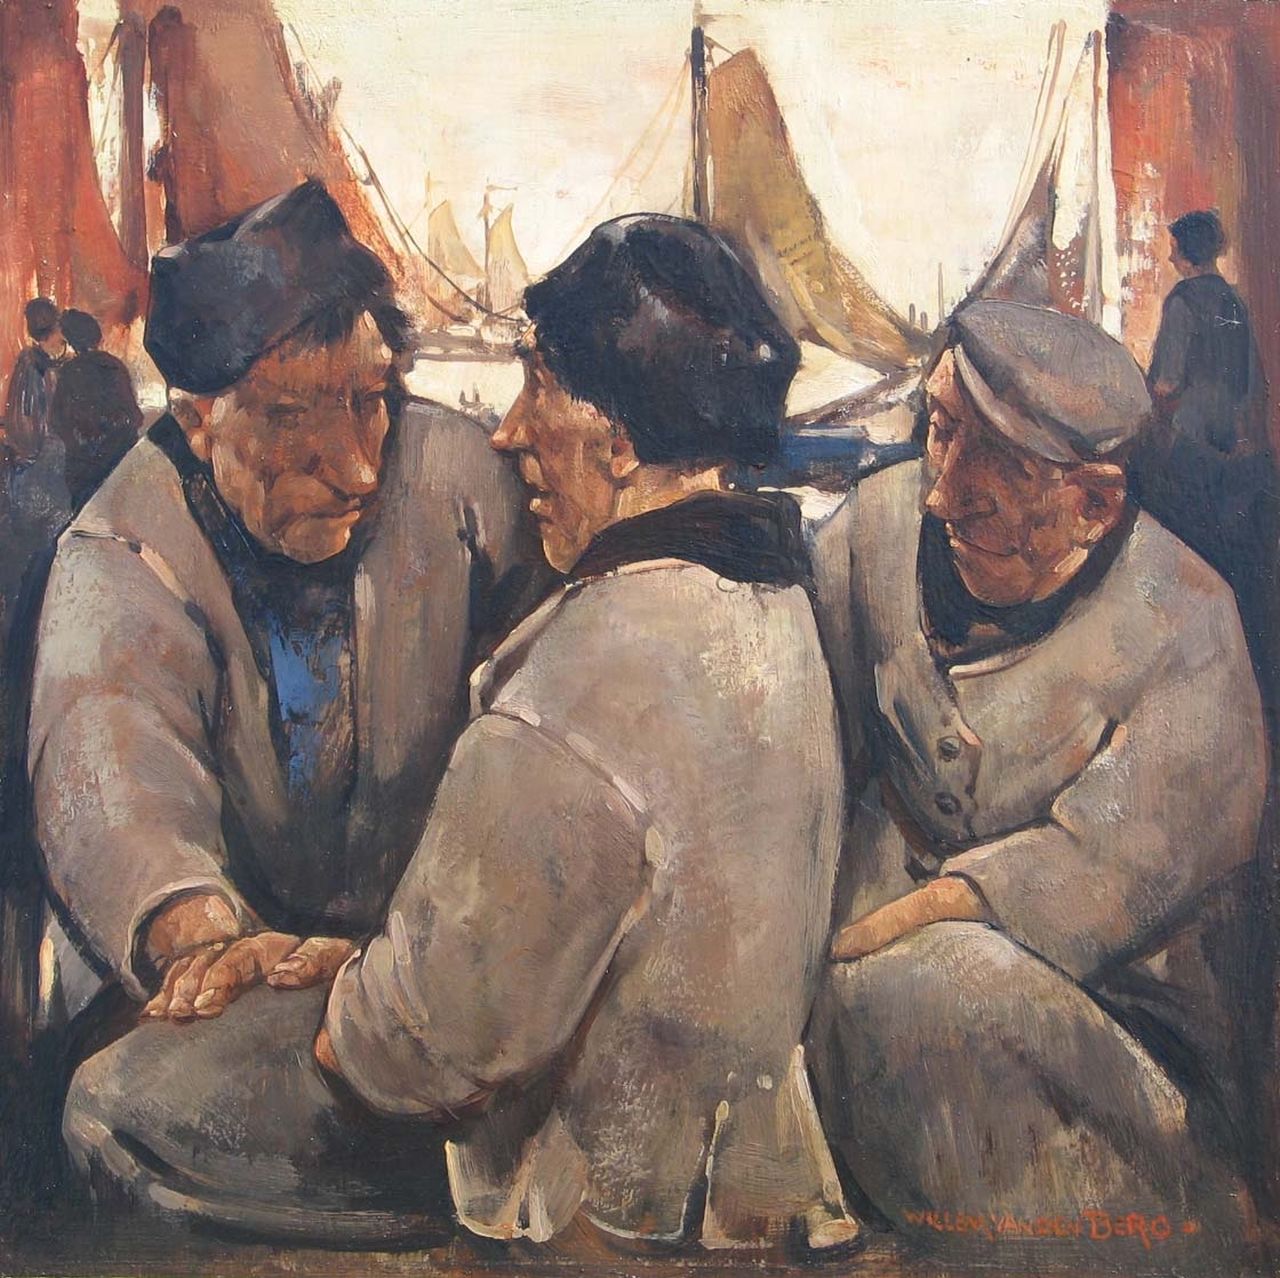 Berg W.H. van den | 'Willem' Hendrik van den Berg, Volendammer vissers, olieverf op paneel 25,5 x 25,5 cm, gesigneerd rechtsonder